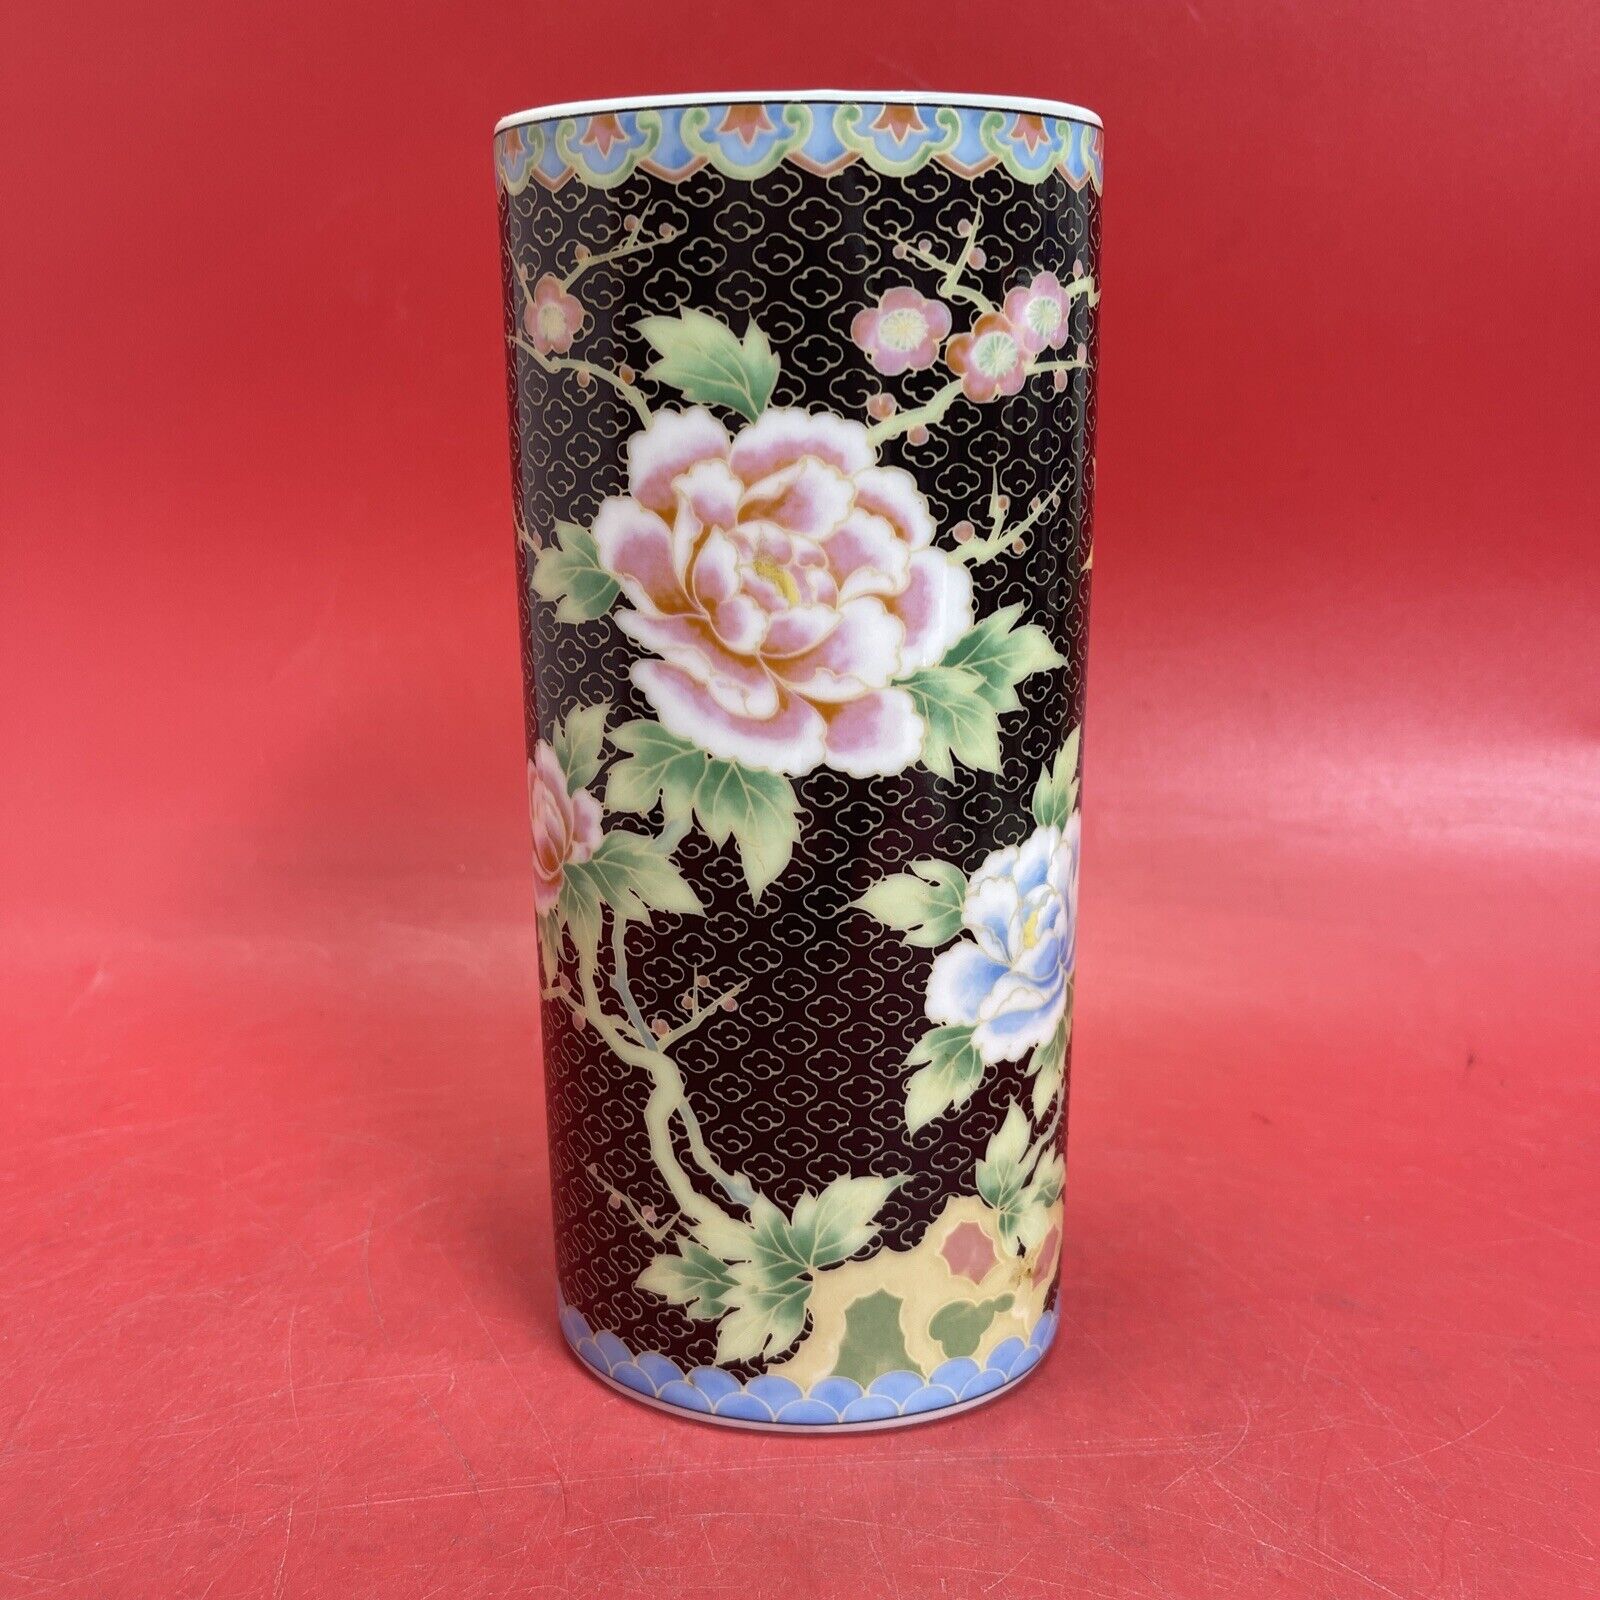 Vintage Chinese porcelain flower vase, stamped on the bottom